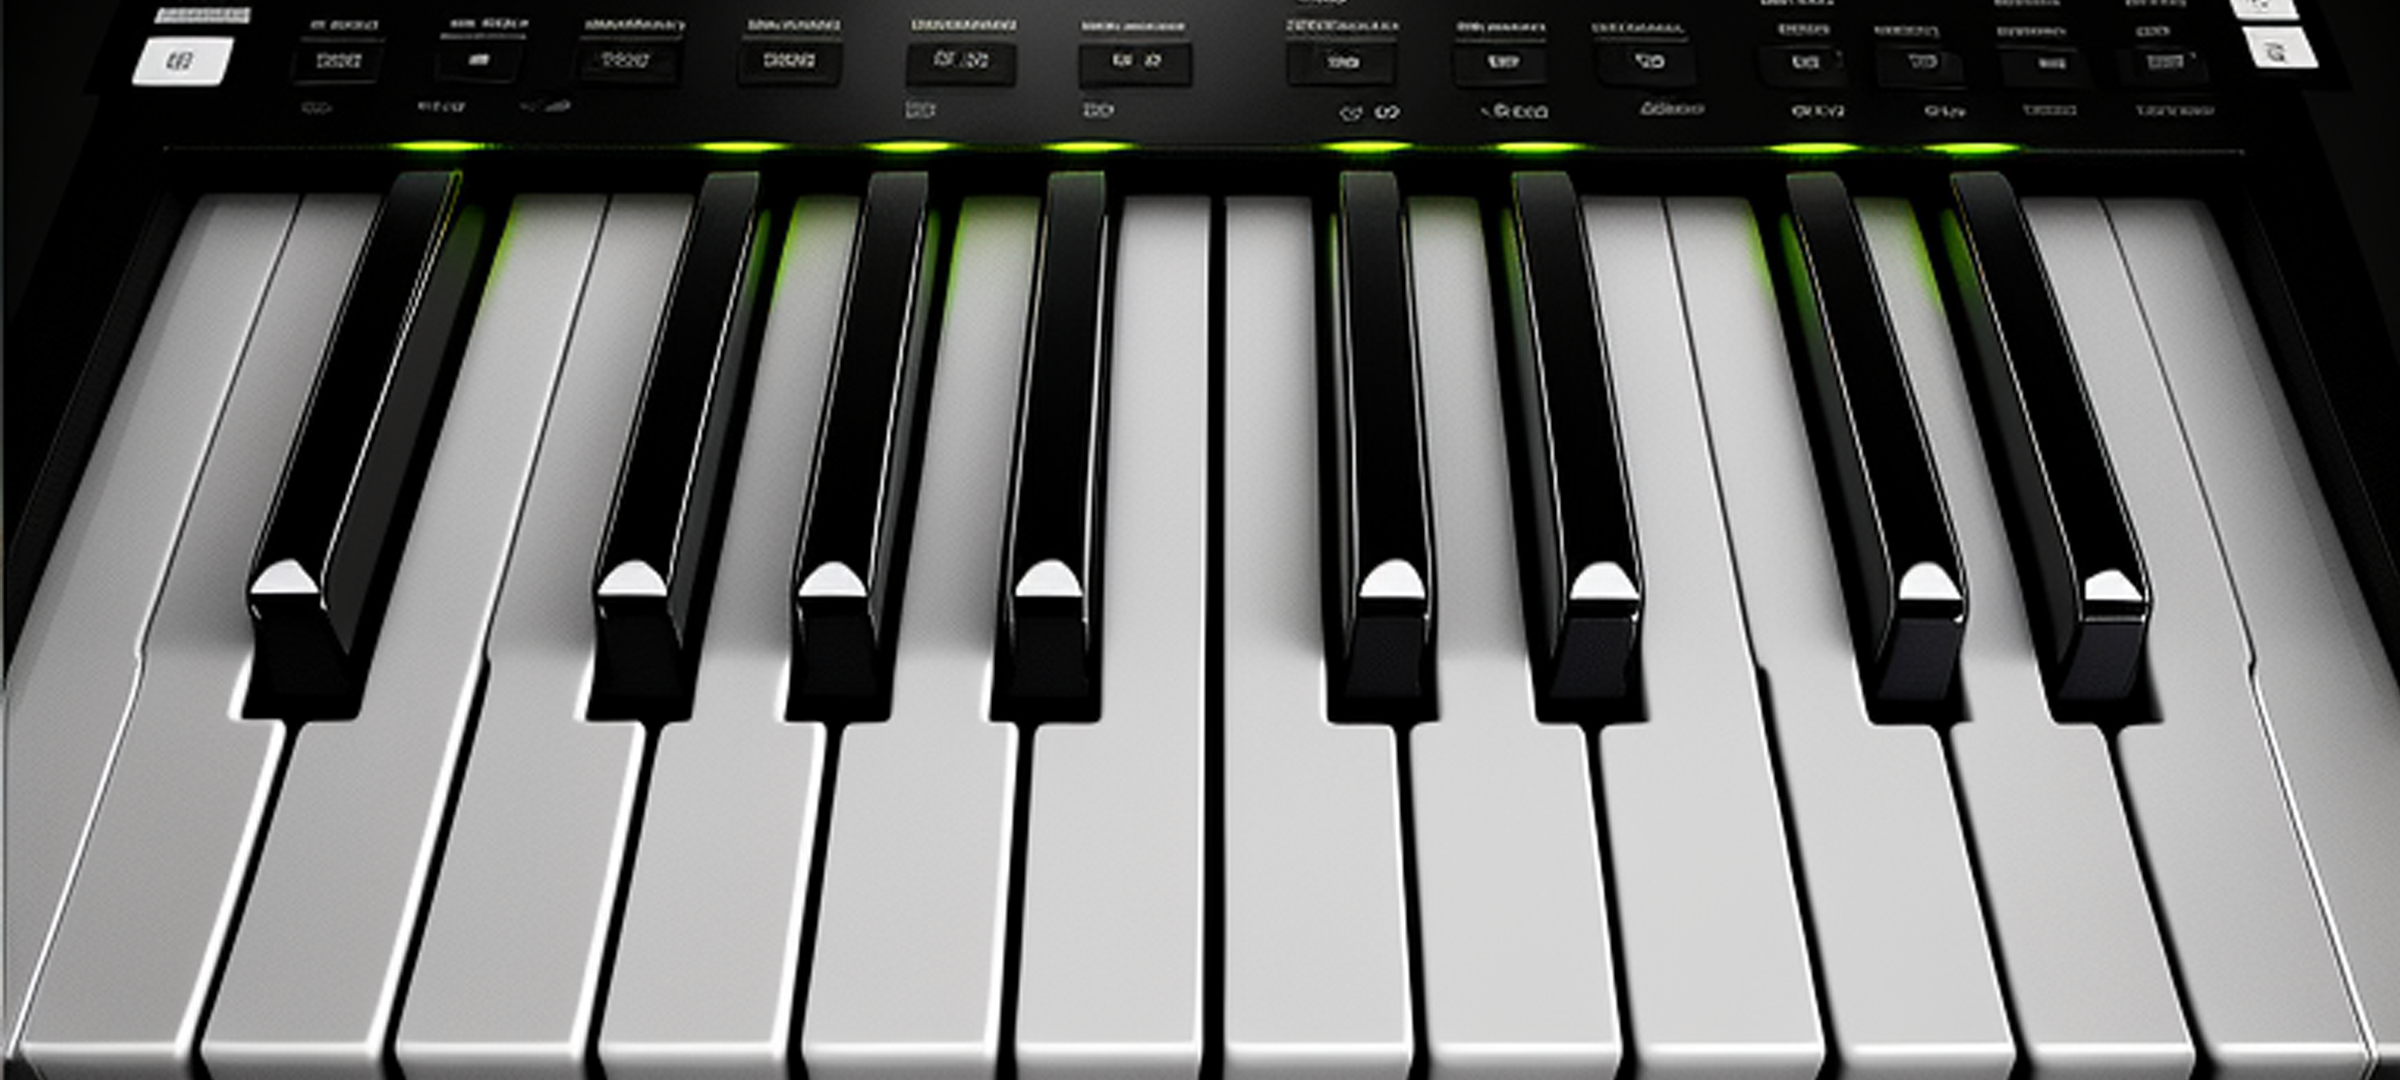 Screenshot 1 of Composição de piano eletrônico 1.0.0